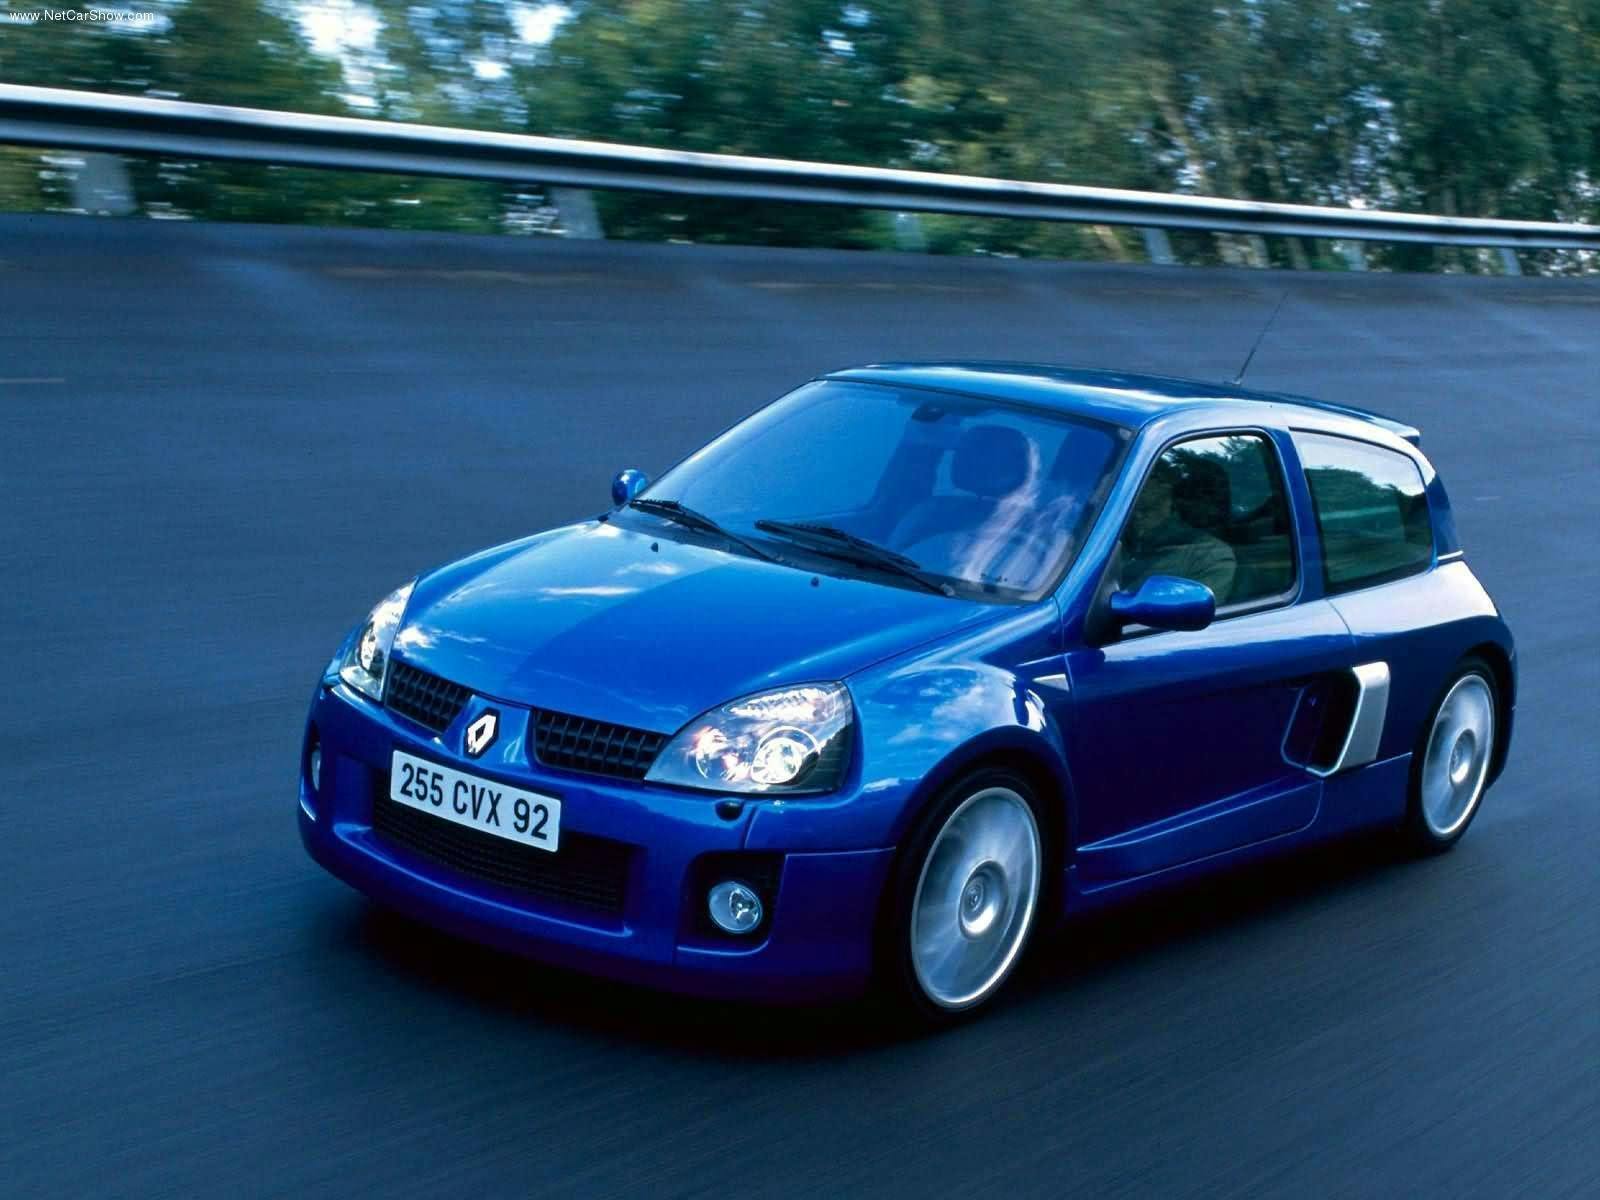 Cele mai bune mașini europene lansate pe piață în anii 2000